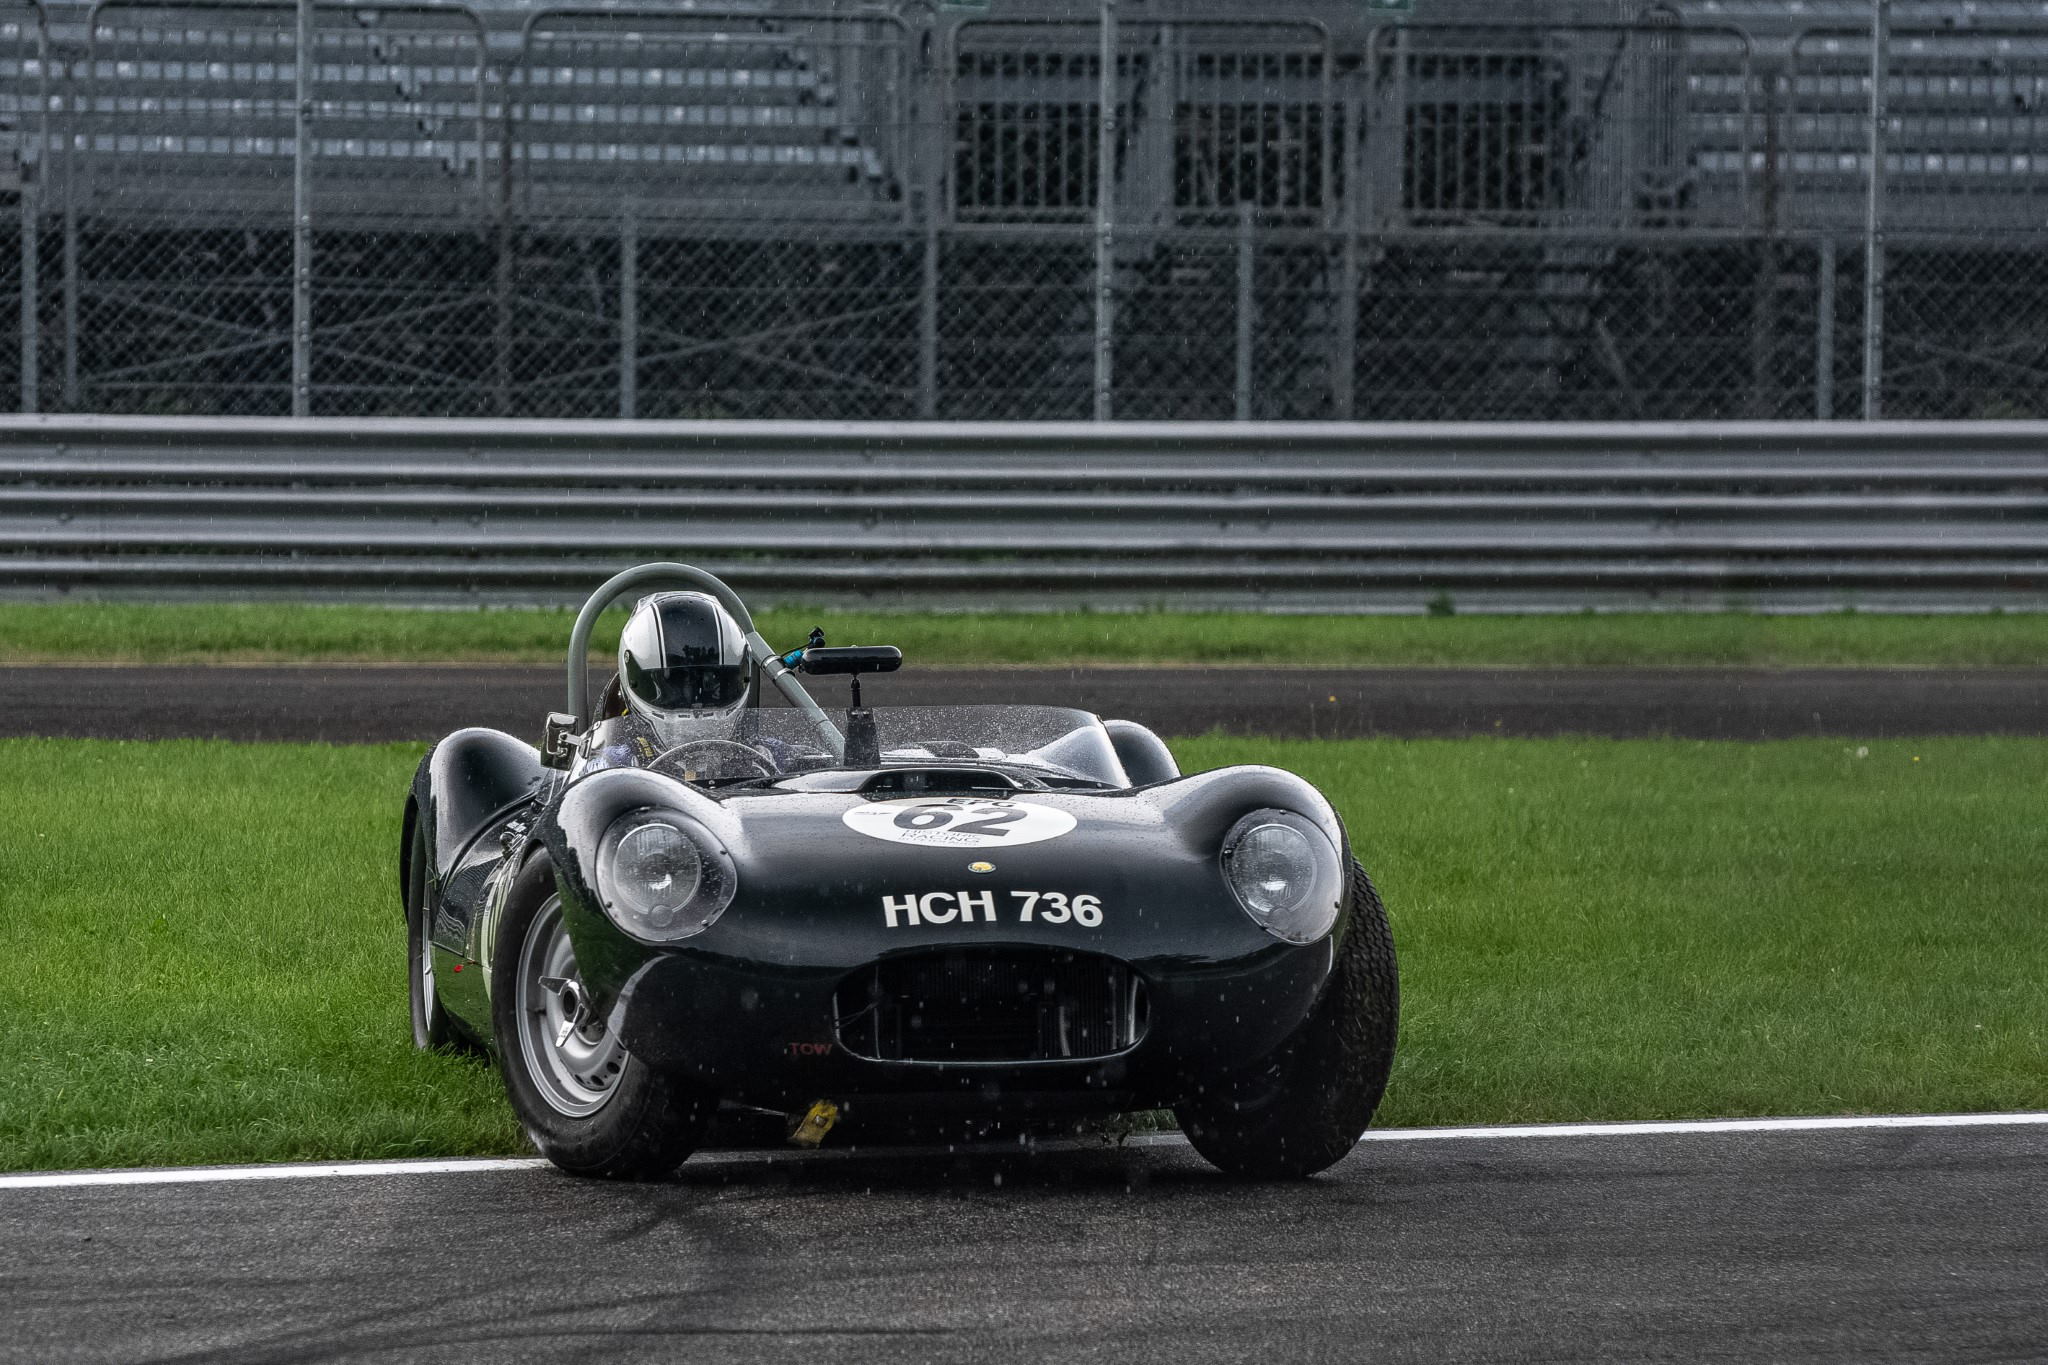 Racetrackstudio_Monza_Historic_Lister_Jaguar.jpg